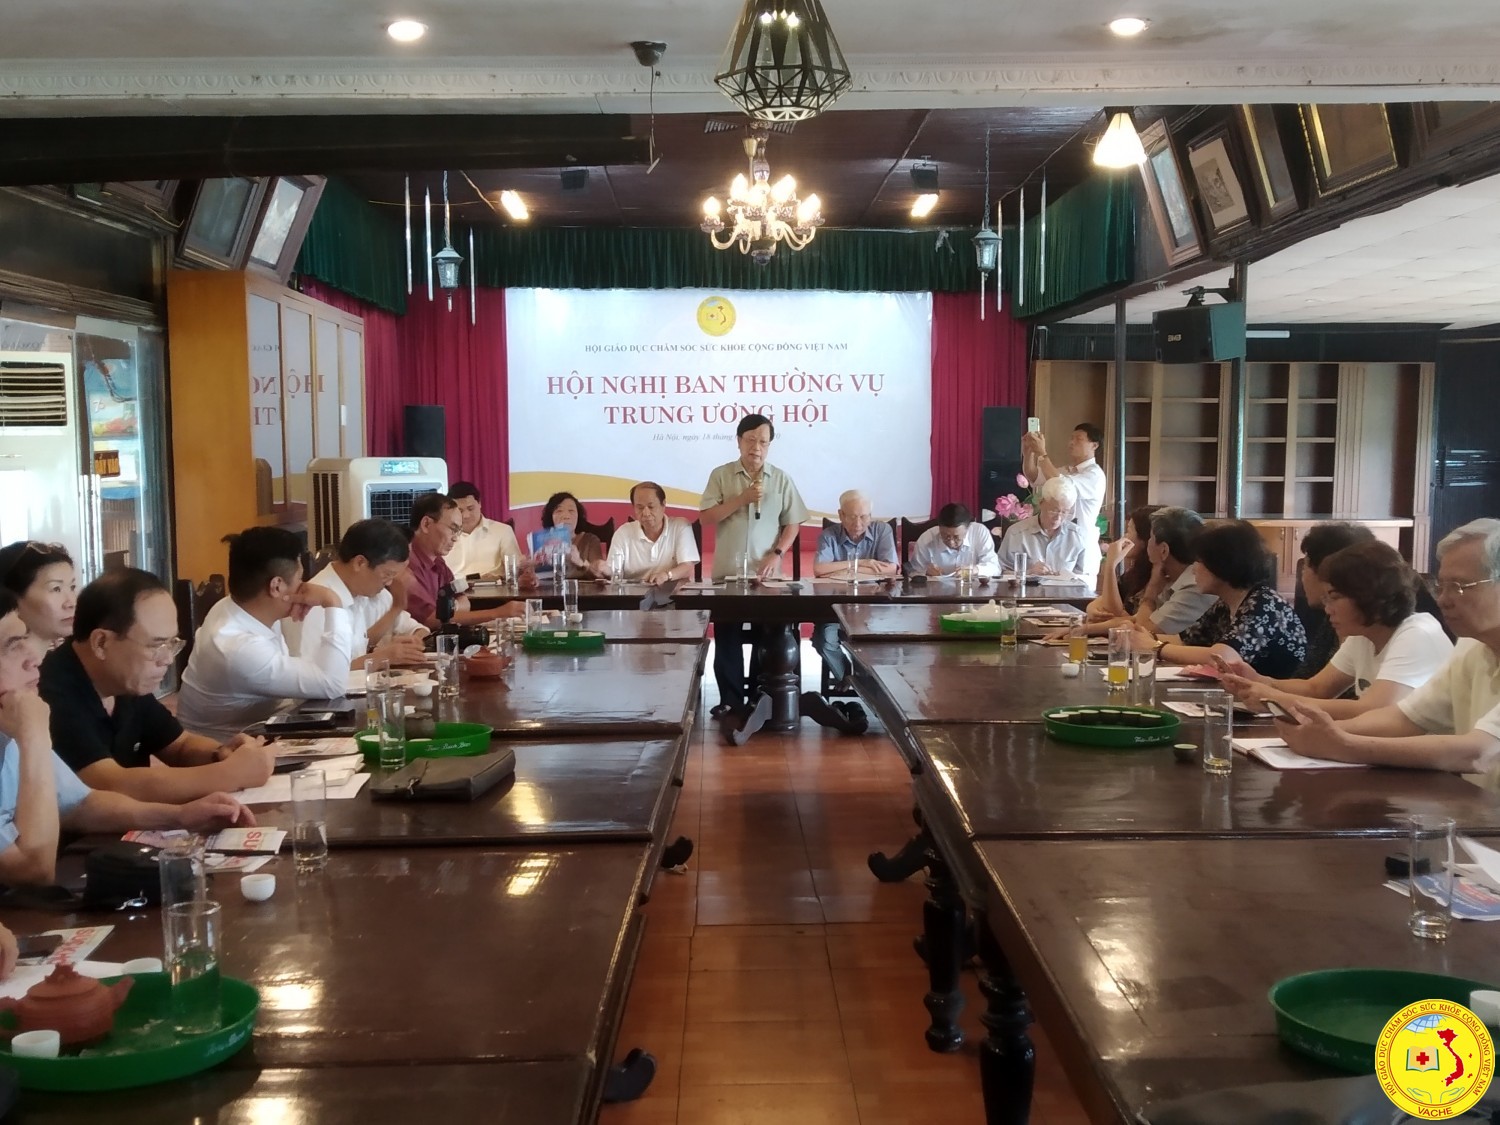 Hội nghị Ban Thường vụ Trung ương Hội GDCSSKCĐ Việt Nam